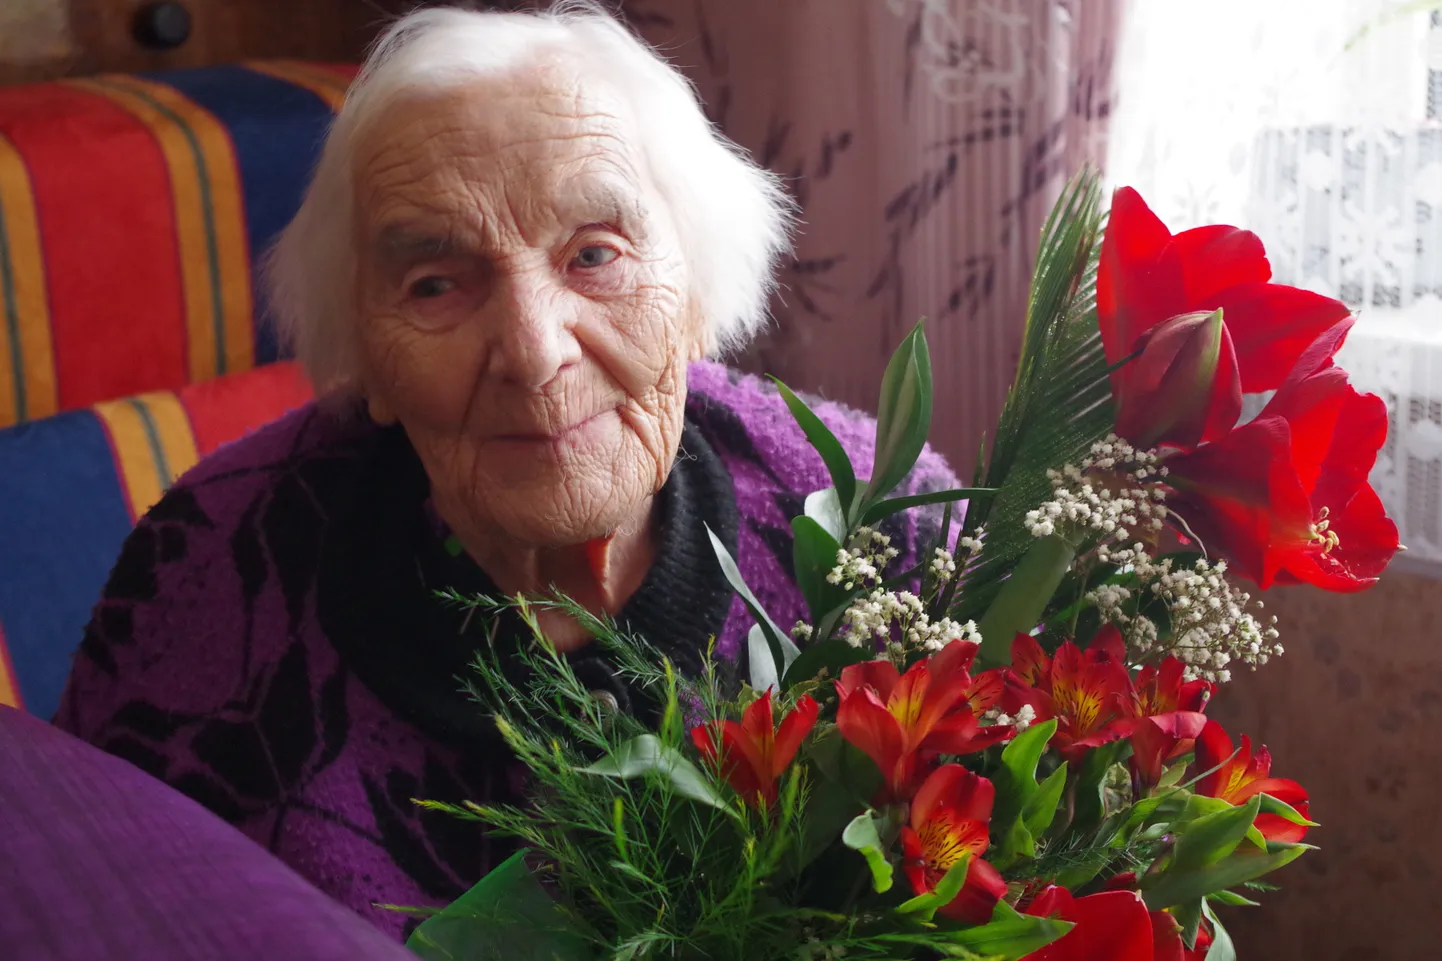 Antonina Vimba meenutab, et kõige raskem aeg oli tal. Teise maailmasõja ajal pärast Vene vägede sissetungi 1944, mil Võru haigla rüüstati ja toitu nappis.